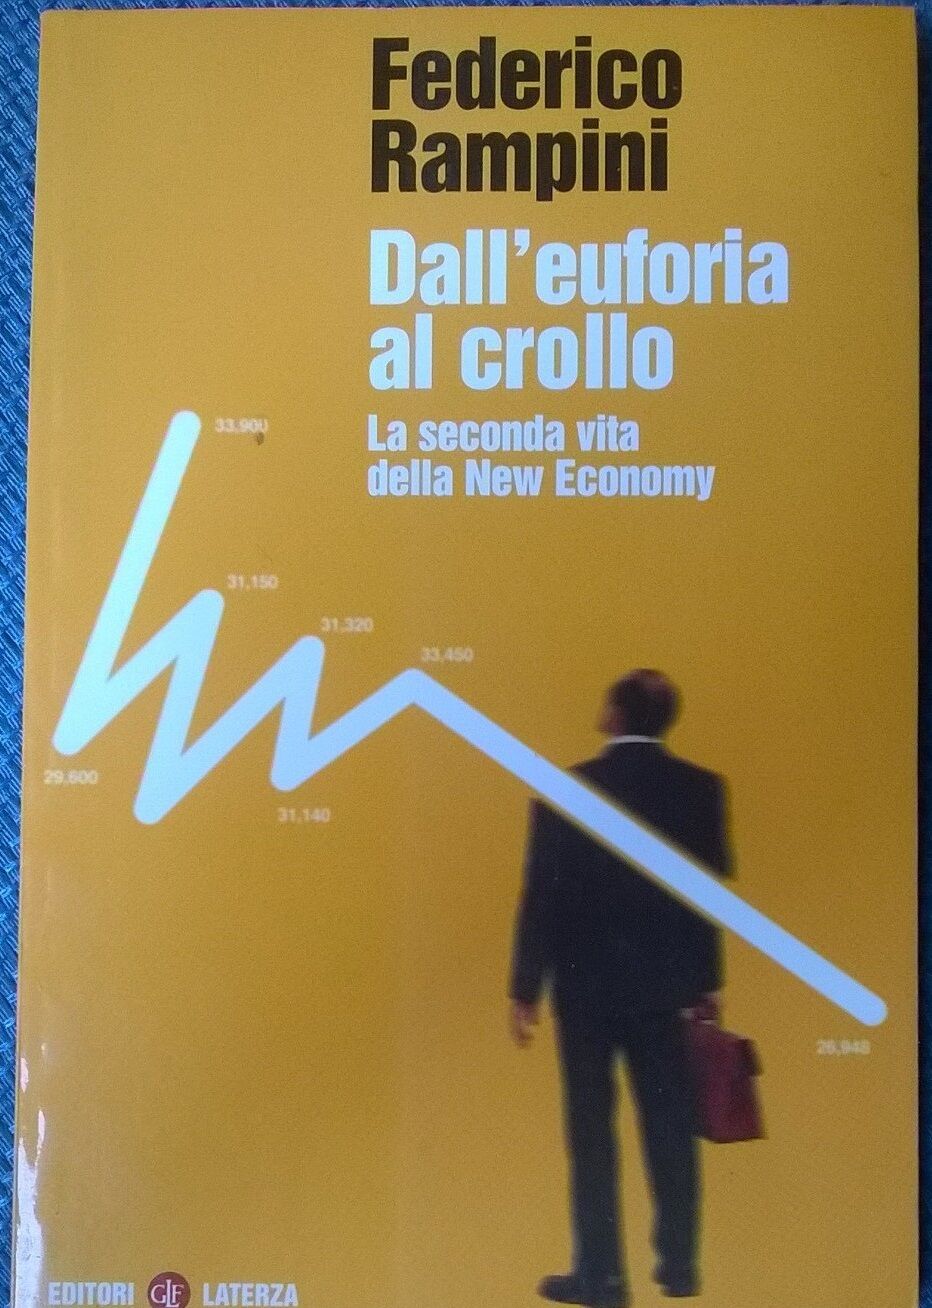 DalL'euforia al crollo La seconda vita della New Economy -Rampini Laterza 2001L 